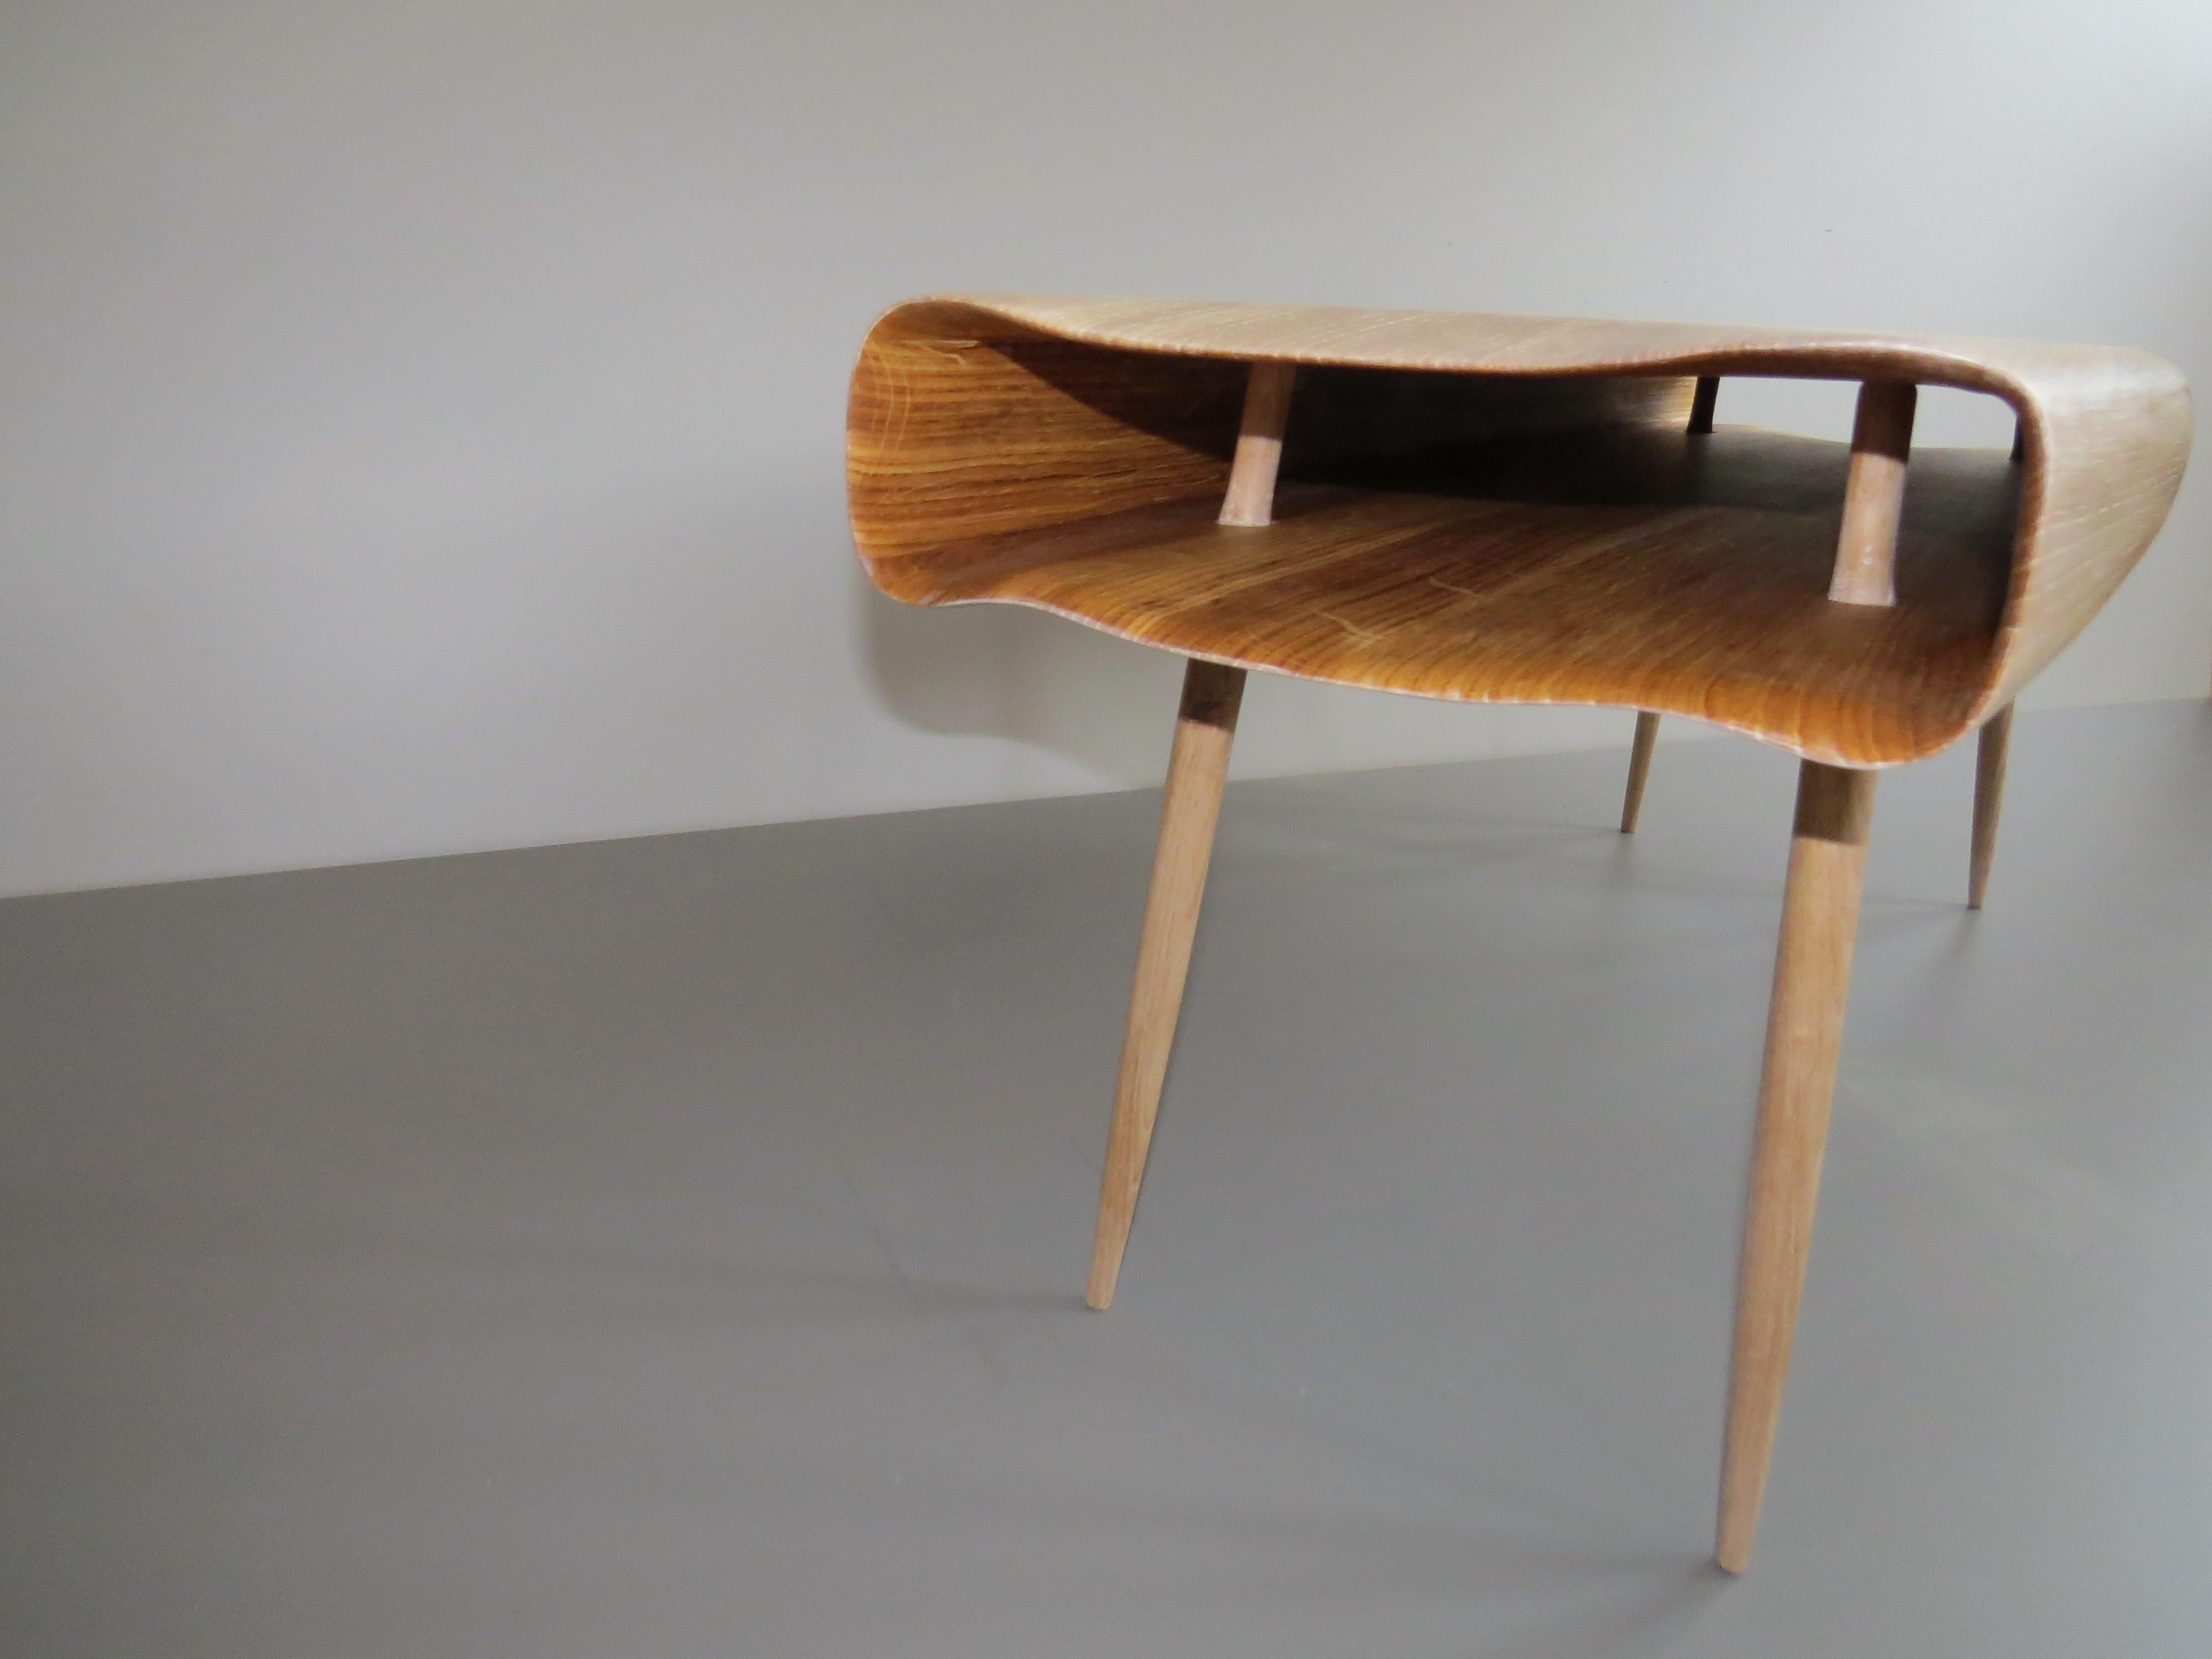 Die Möbel des deutschen Möbeldesigners Eckehard Weimann scheinen lebendig zu sein.

Hier als Sitzbank: Ein Hohlkörper aus Massivholz dient als Sitzobjekt, er ist organisch fein ausgearbeitet.
von Hand, natürlich!
Das Objekt erscheint weich in der